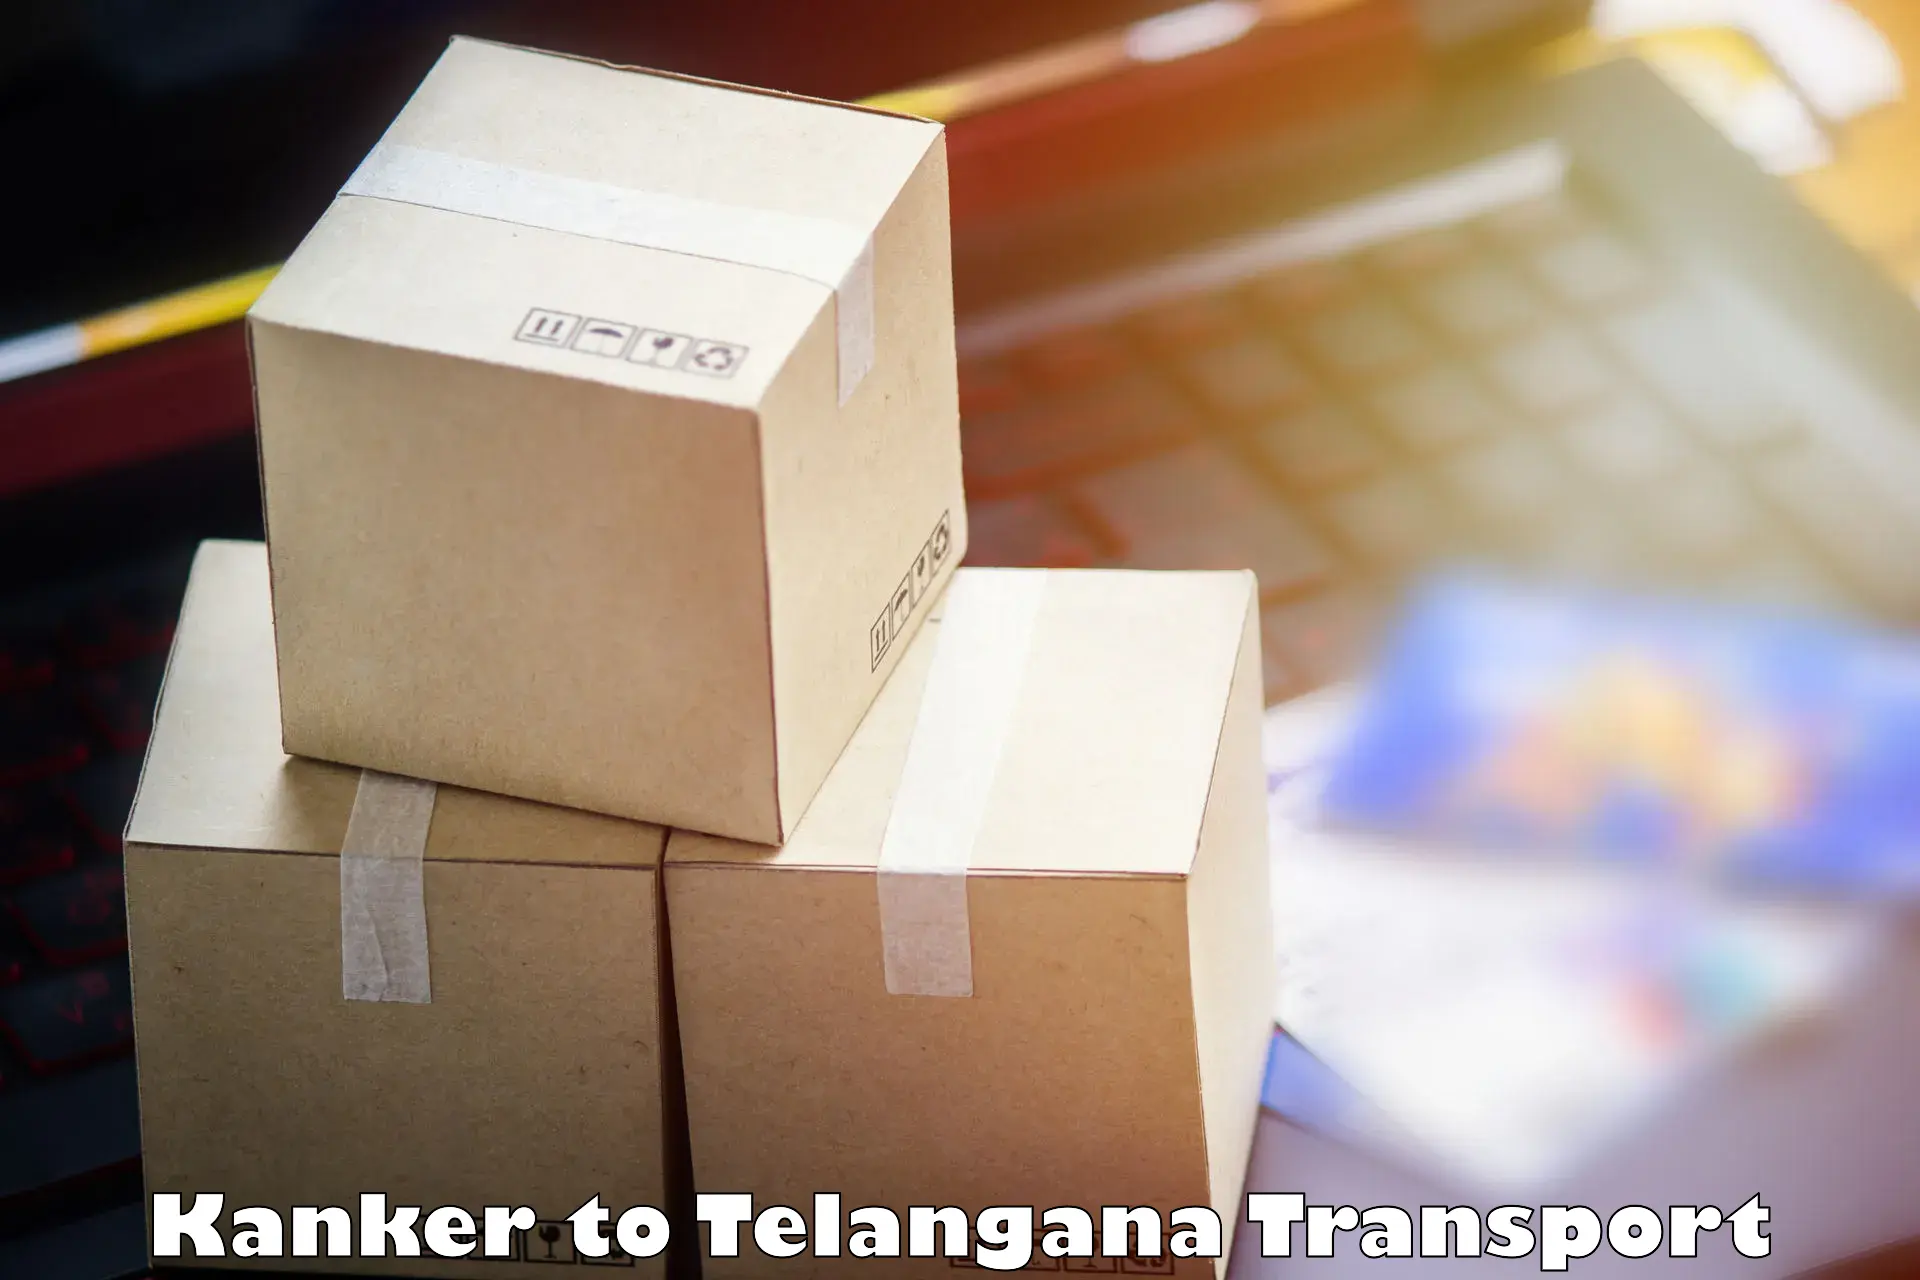 Online transport service Kanker to Koratla